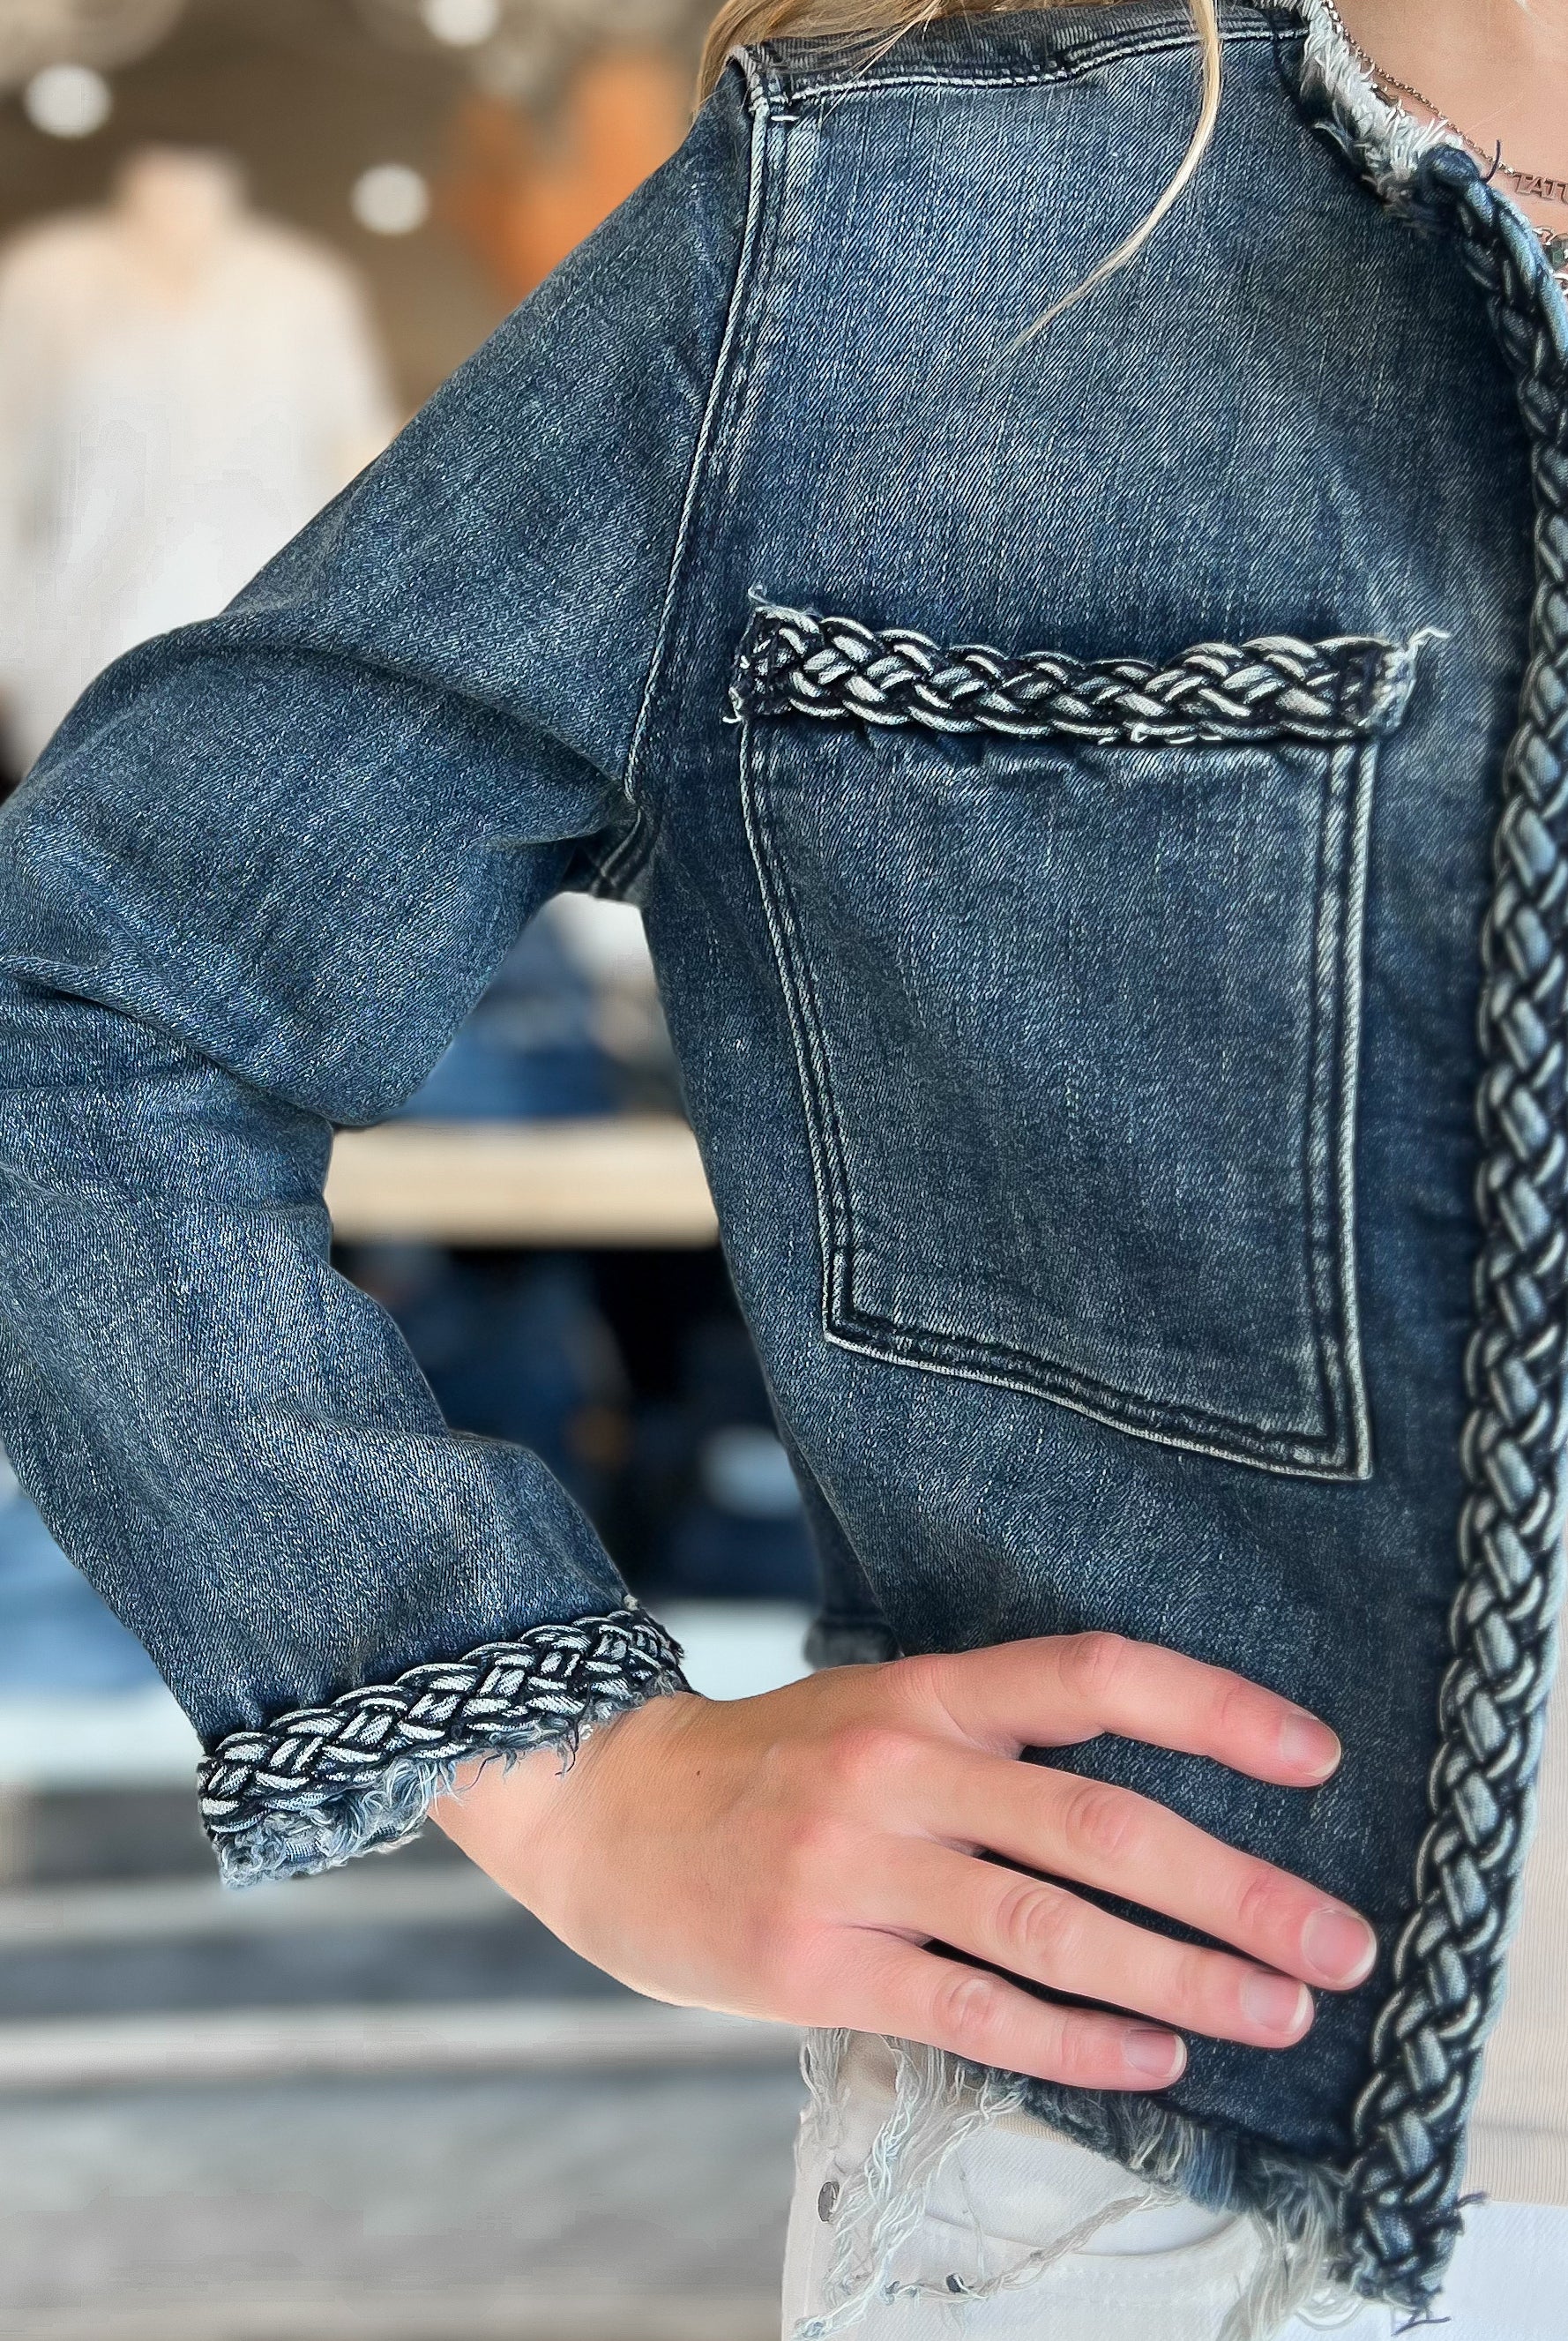 Mainstream Boutique Stillwater Women’s Denim Jacket with Braided Detail